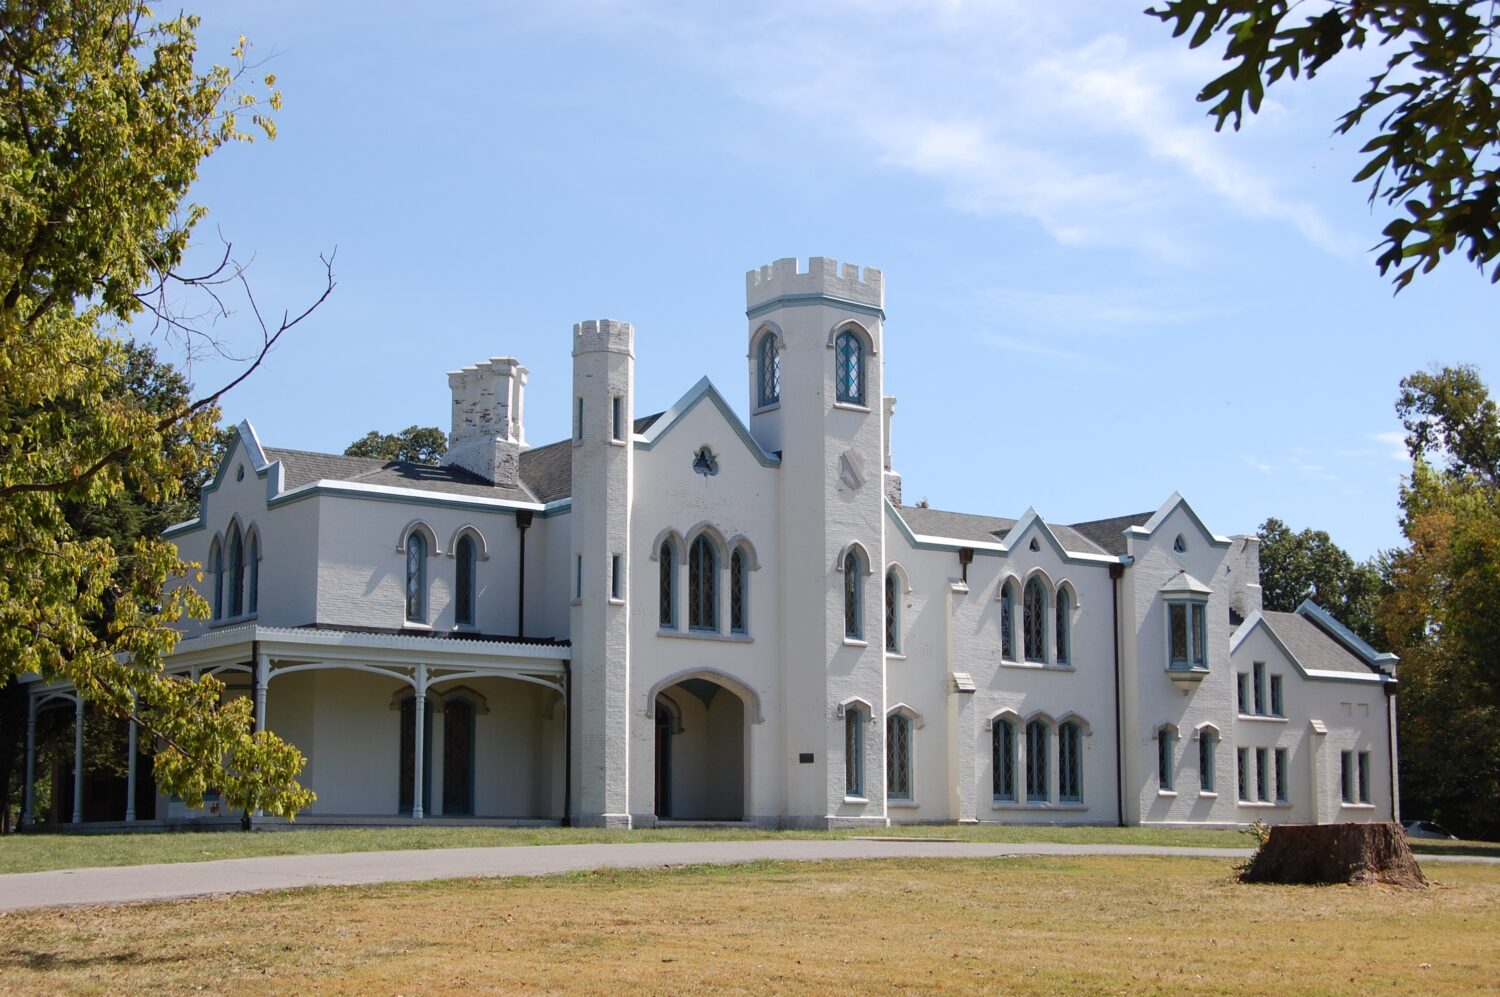 Loudoun House è considerata uno degli esempi più grandi e raffinati di architettura neogotica nel Kentucky. 